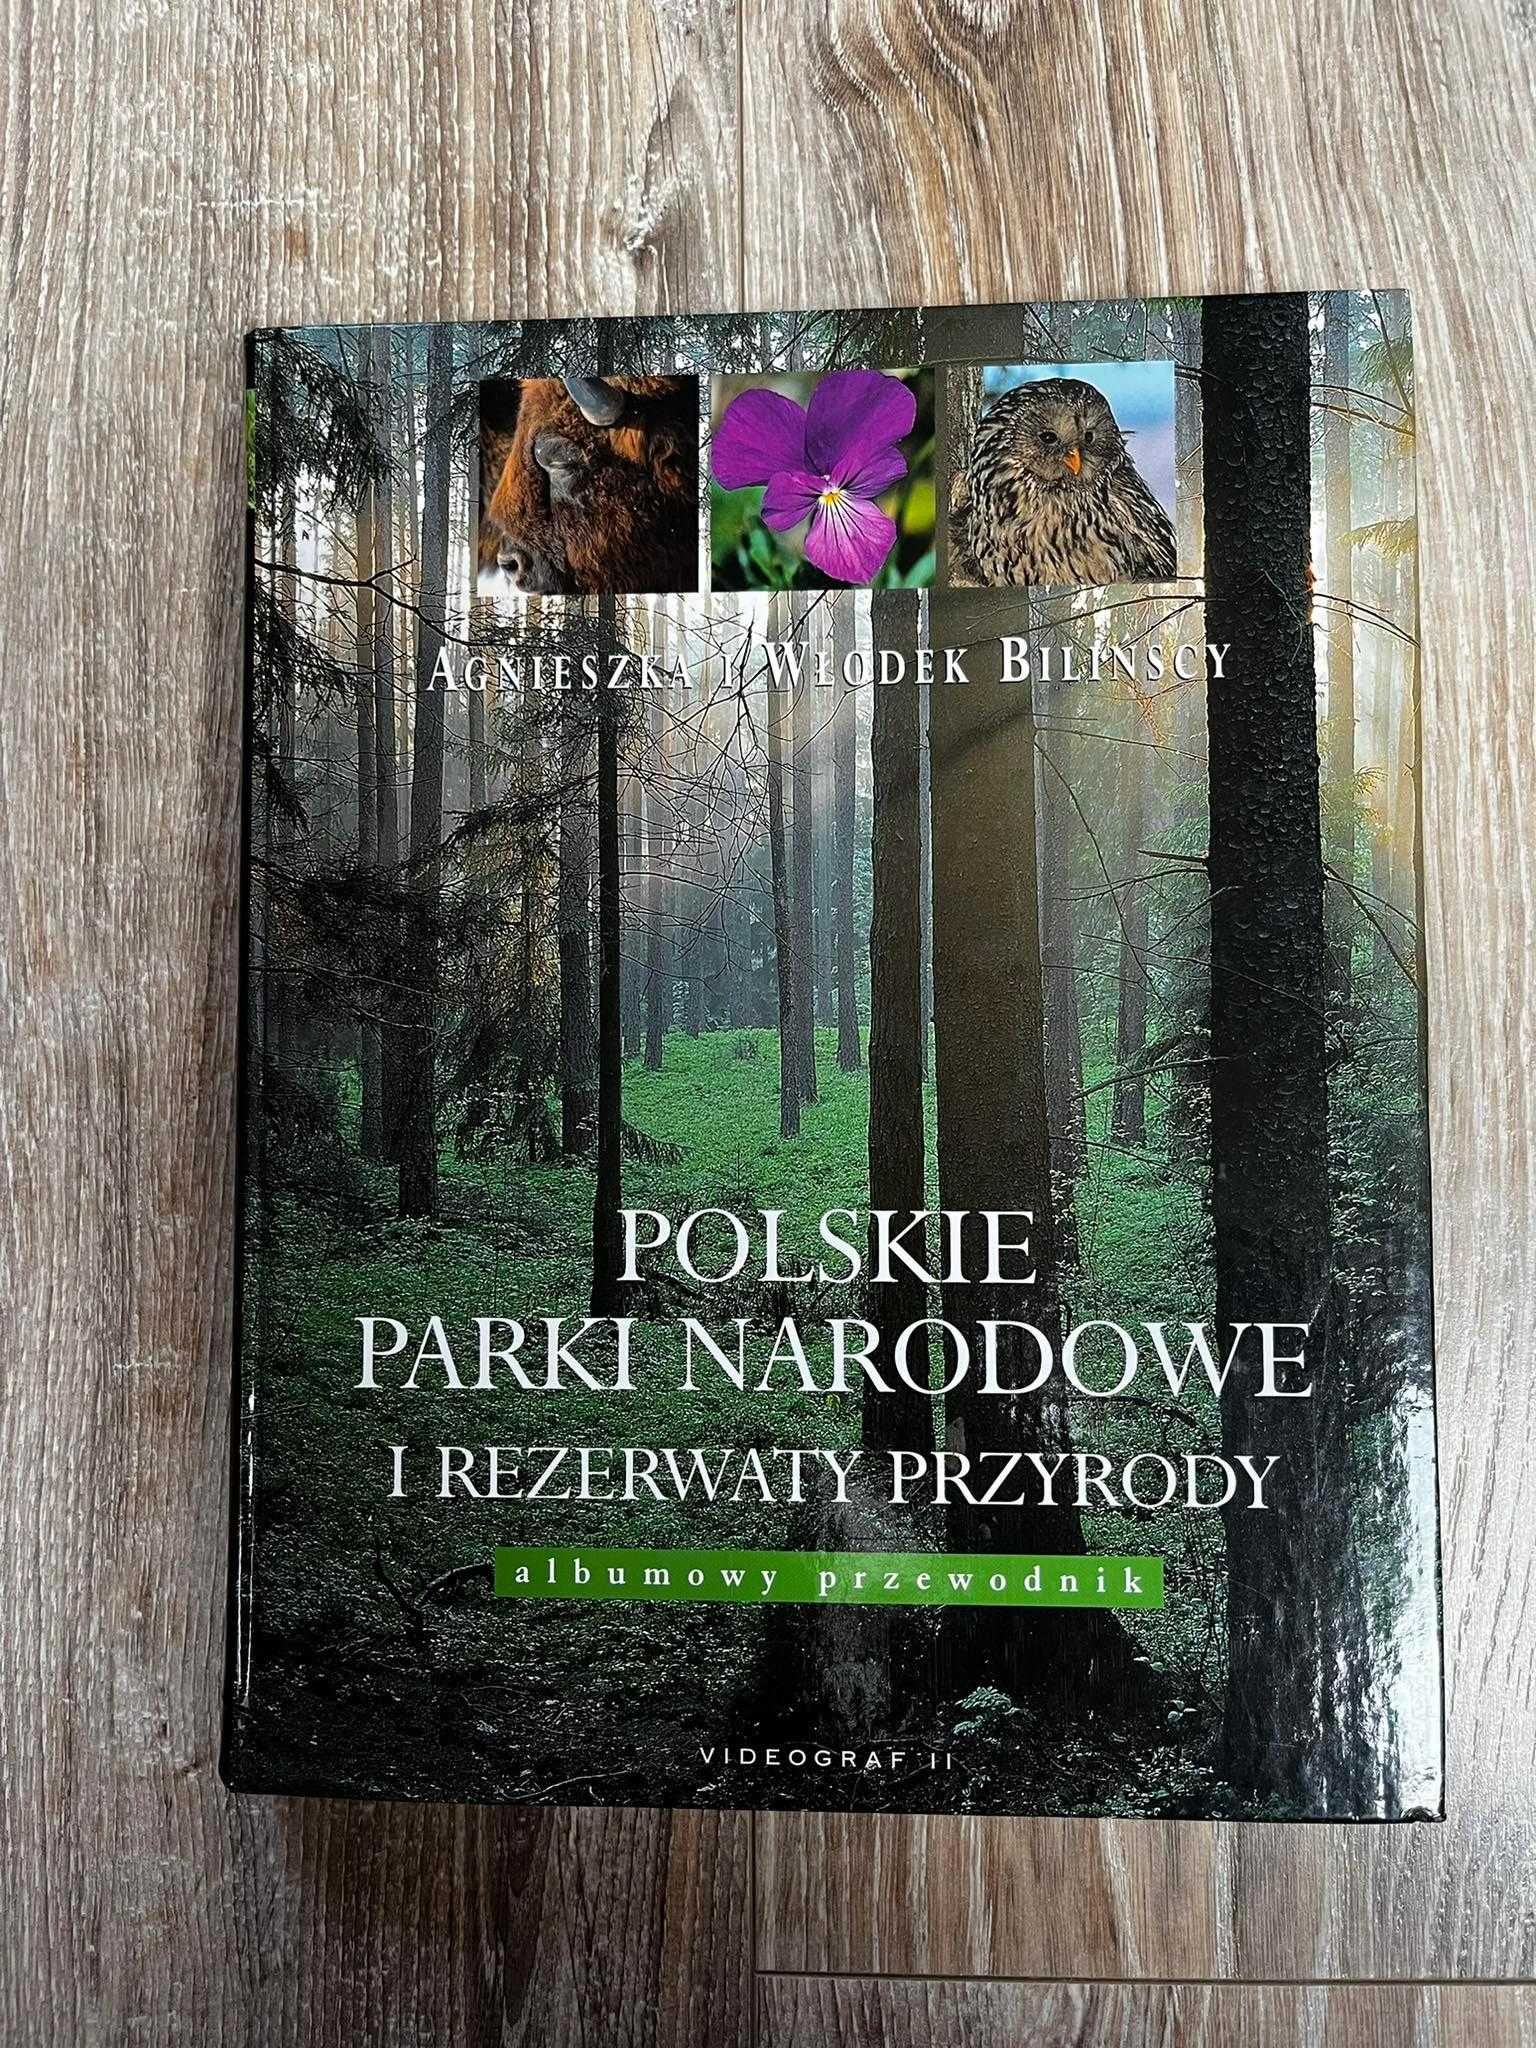 Polskie parki narodowe i rezerwaty przyrody - albumowy przewodnik